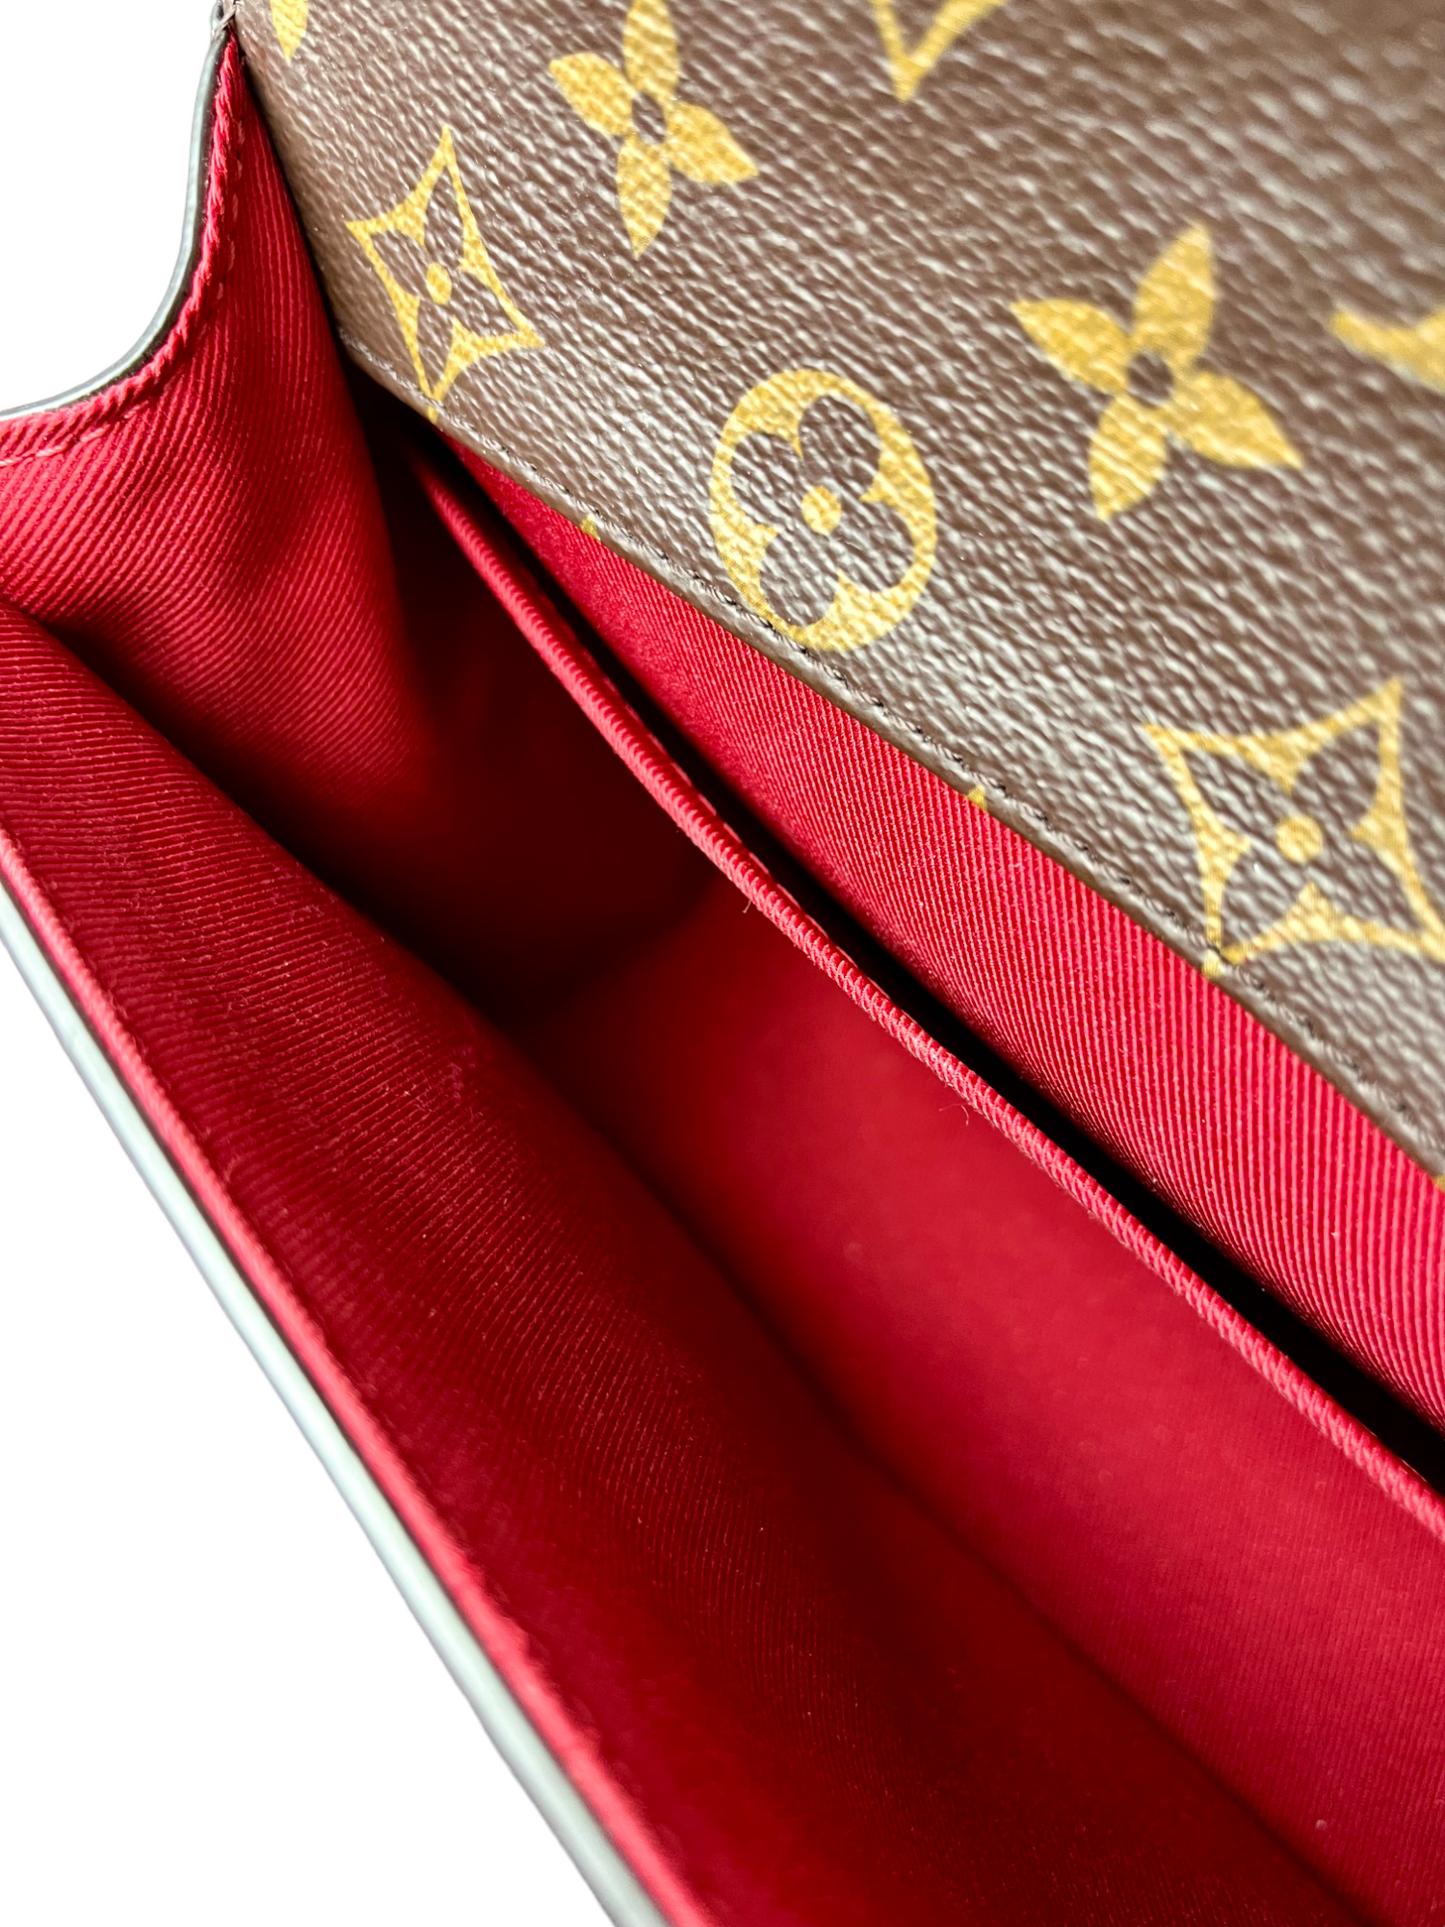 Louis Vuitton Scarlet Vernis & Monogram Canvas Cherrywood BB, myGemma, SG